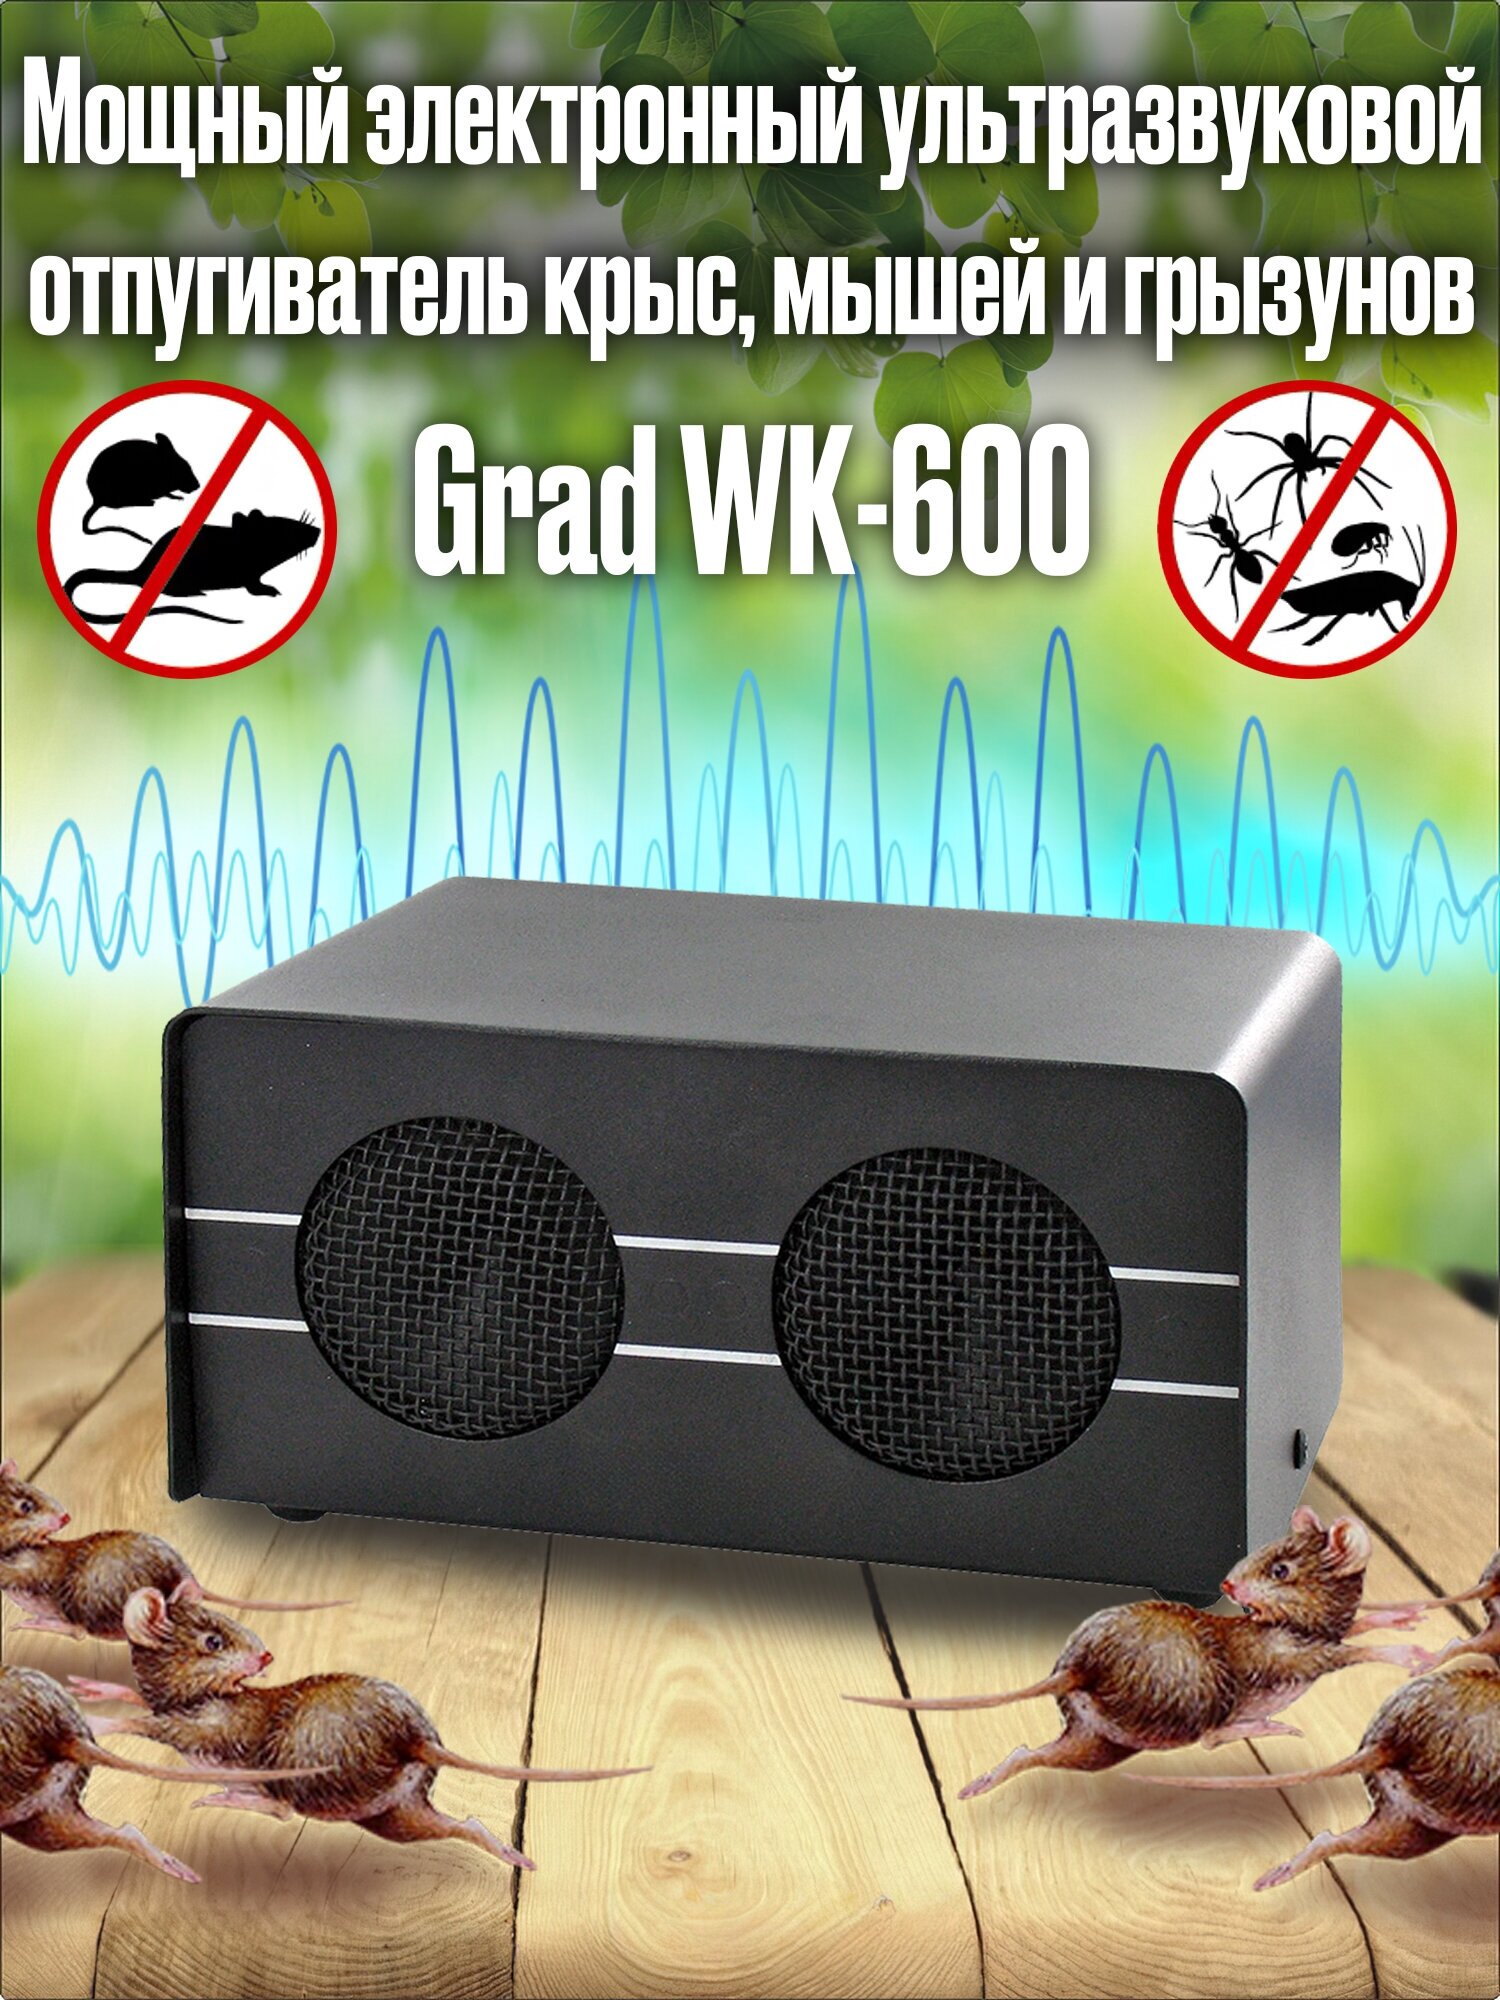 Мощный электронный ультразвуковой отпугиватель крыс, мышей и грызунов Grad WK-600 - фотография № 1